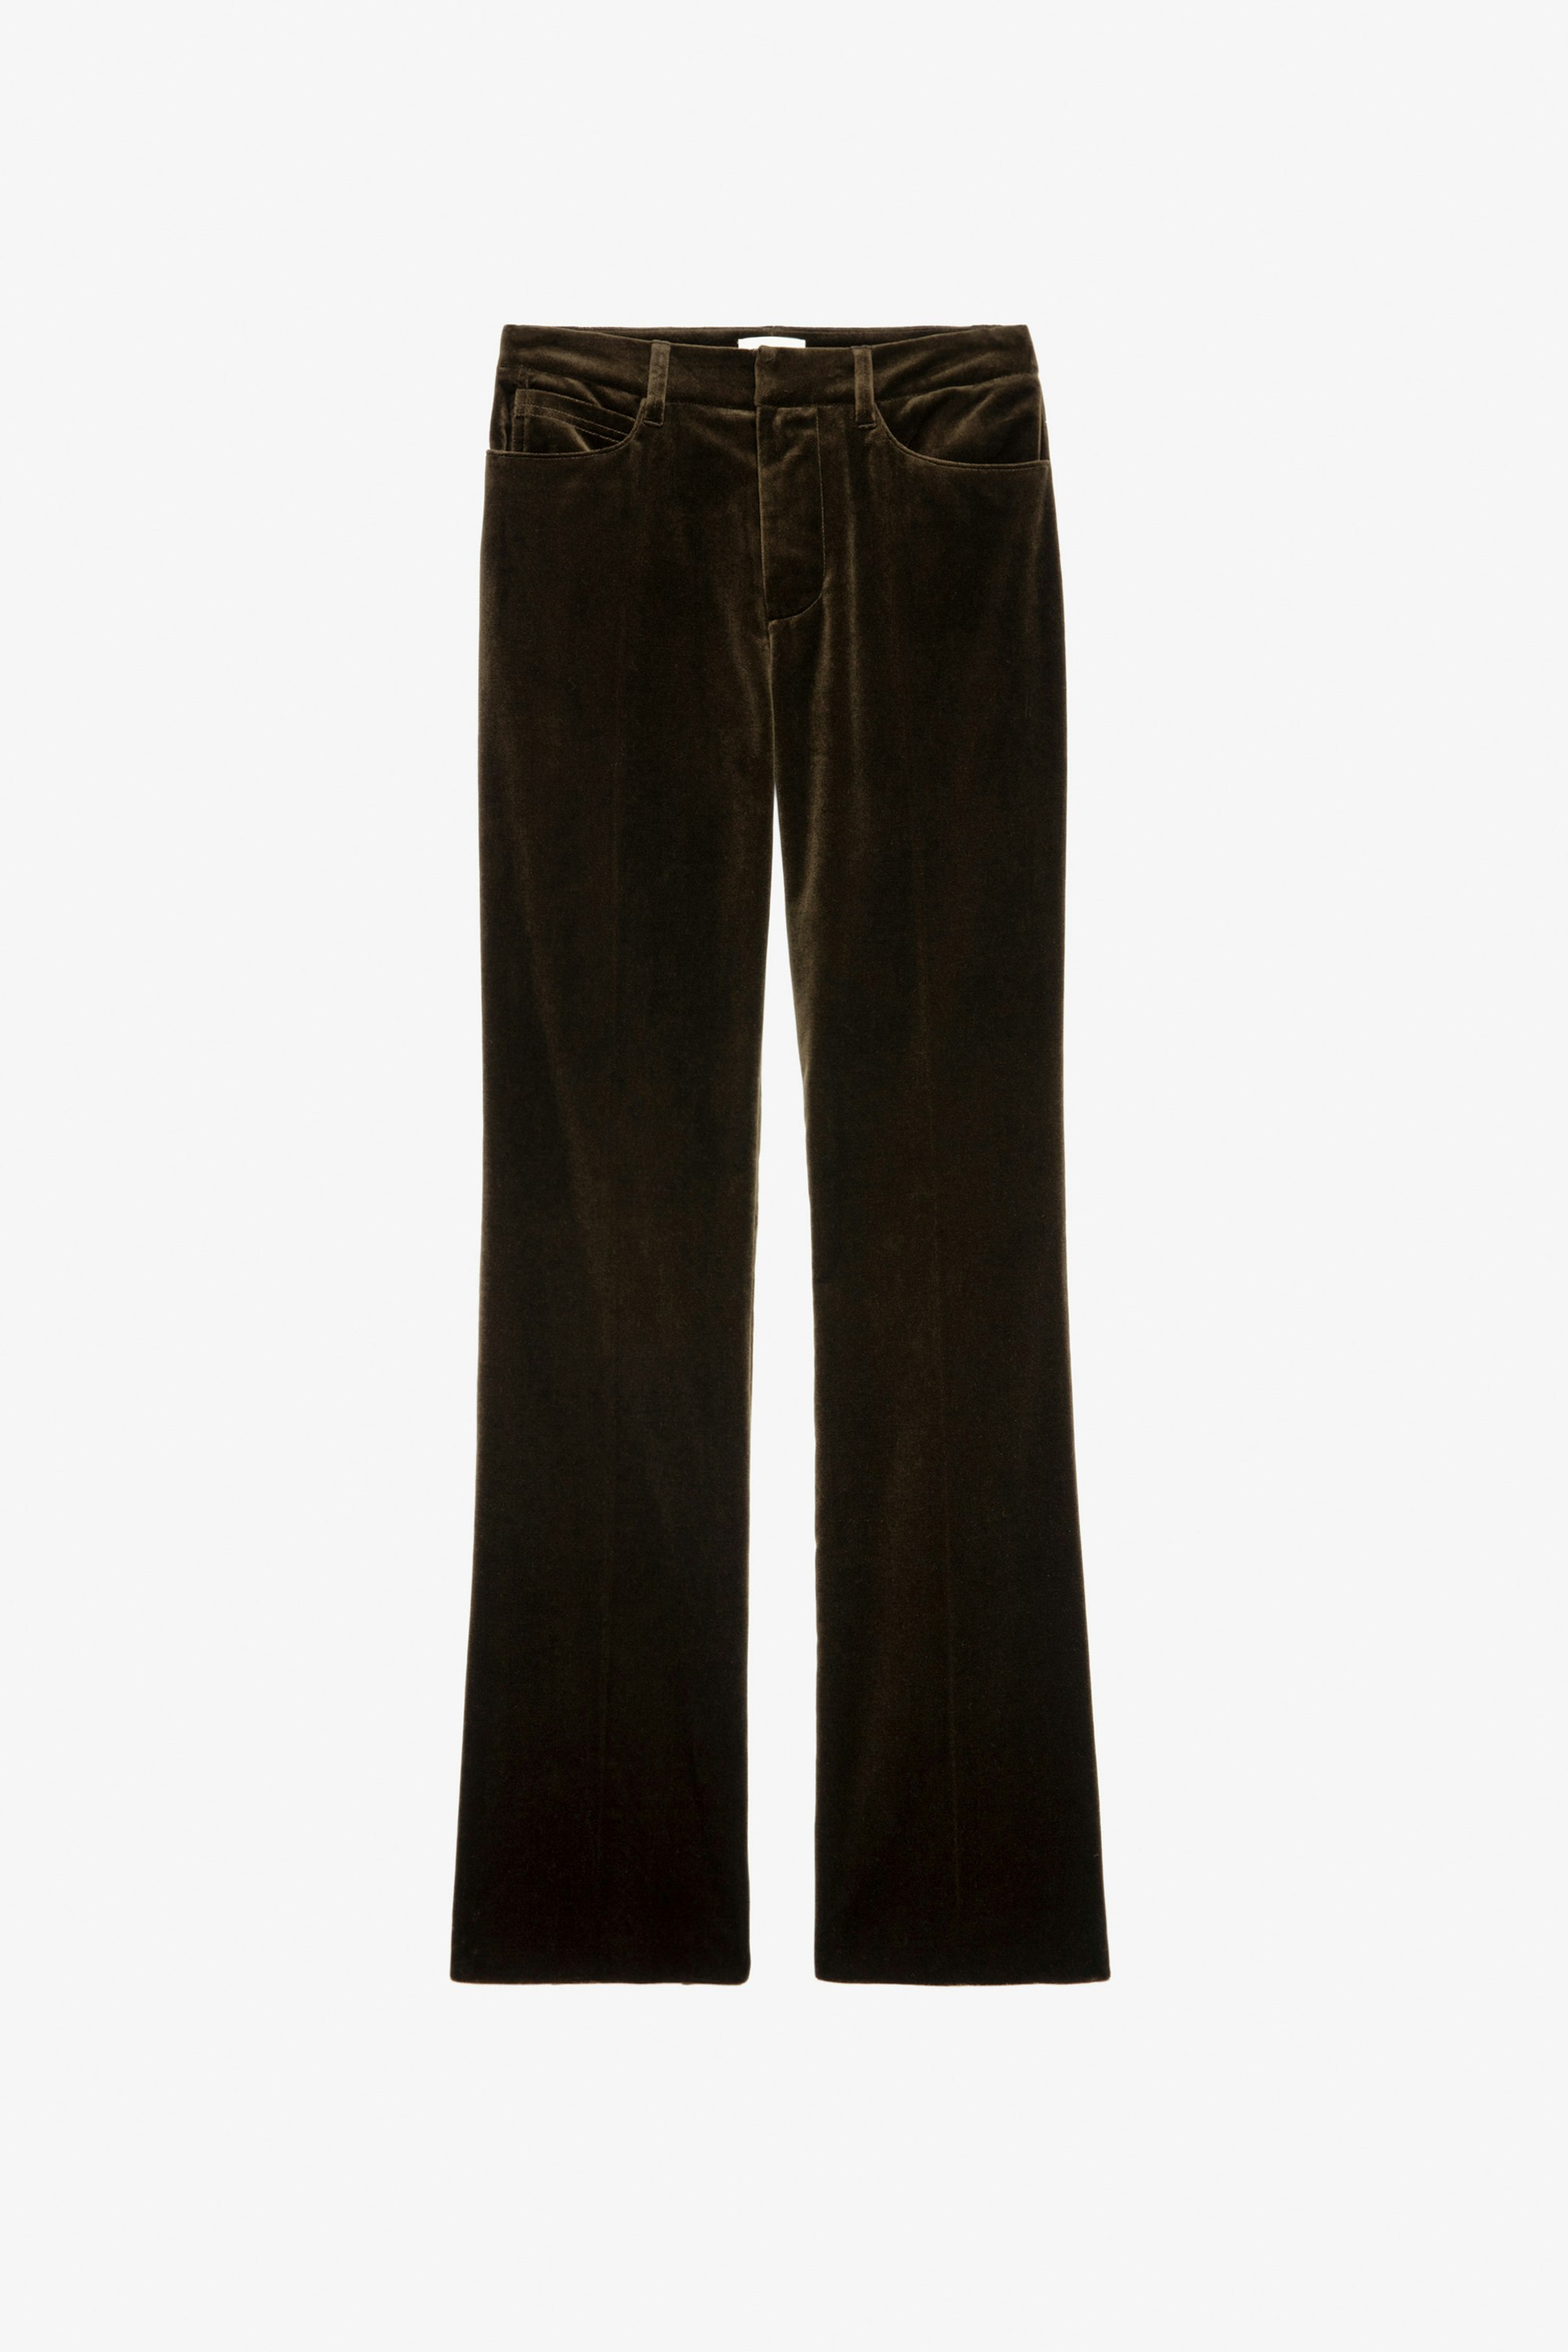 Pistol Velvet Pants - Women’s khaki velvet tailored pants.